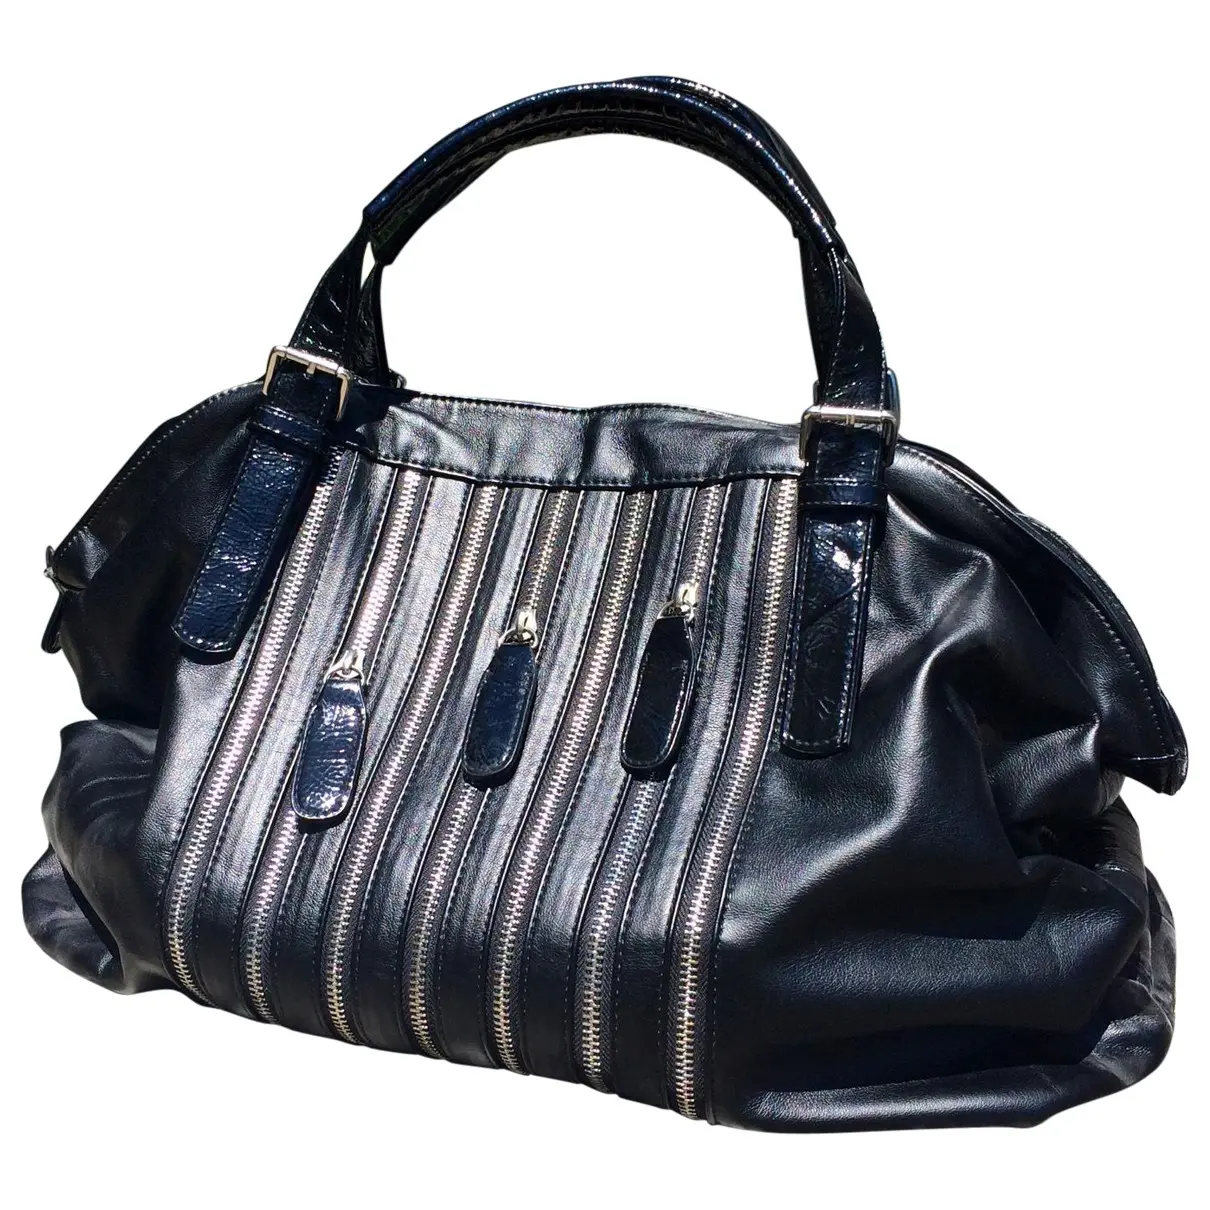 Black Handbag Zara